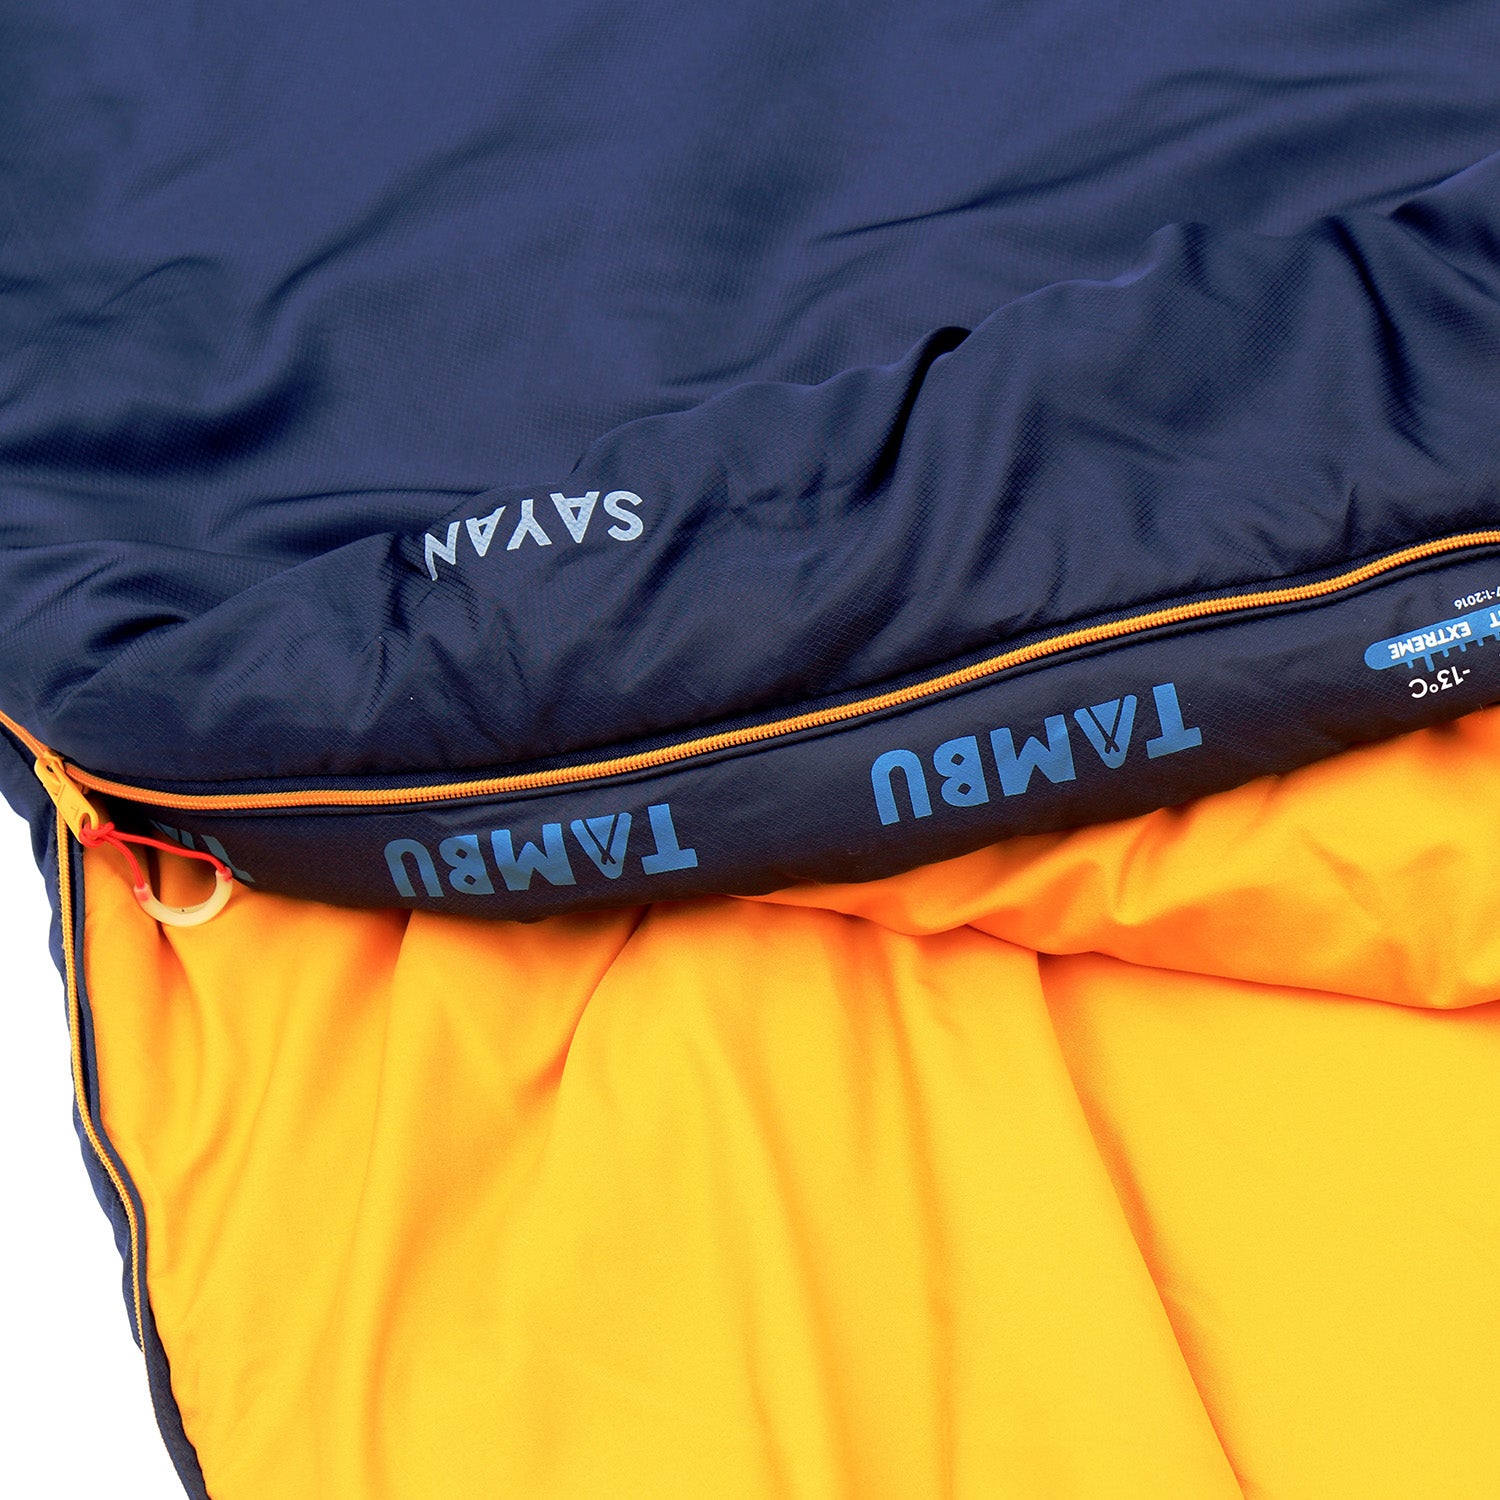 SAYAN | blanket sleeping bag 1425 gr